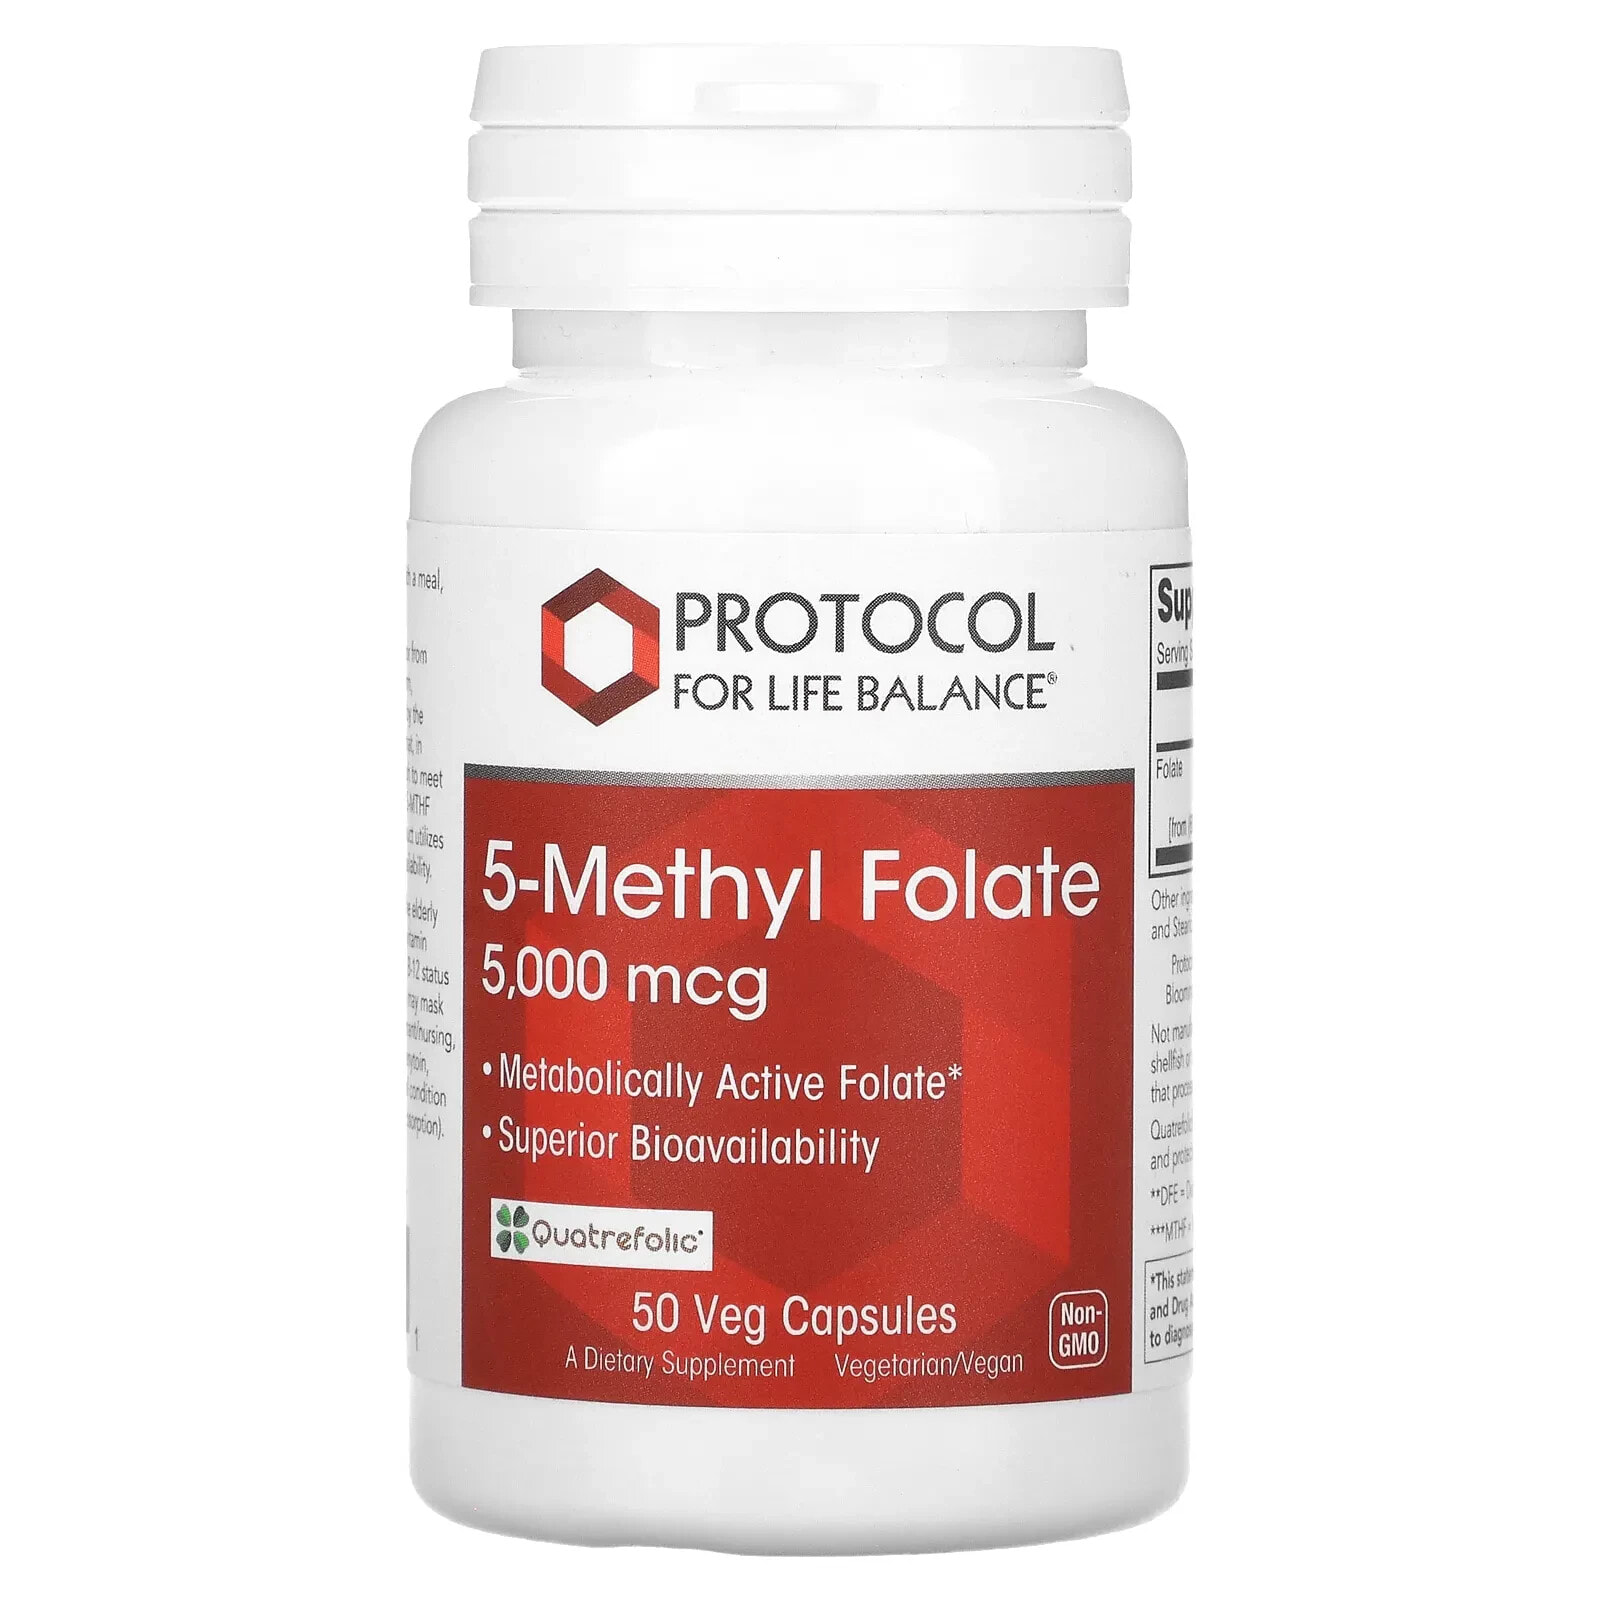 Protocol for Life Balance, 5-Methyl Folate, 5,000 mcg , 50 Veg Capsules